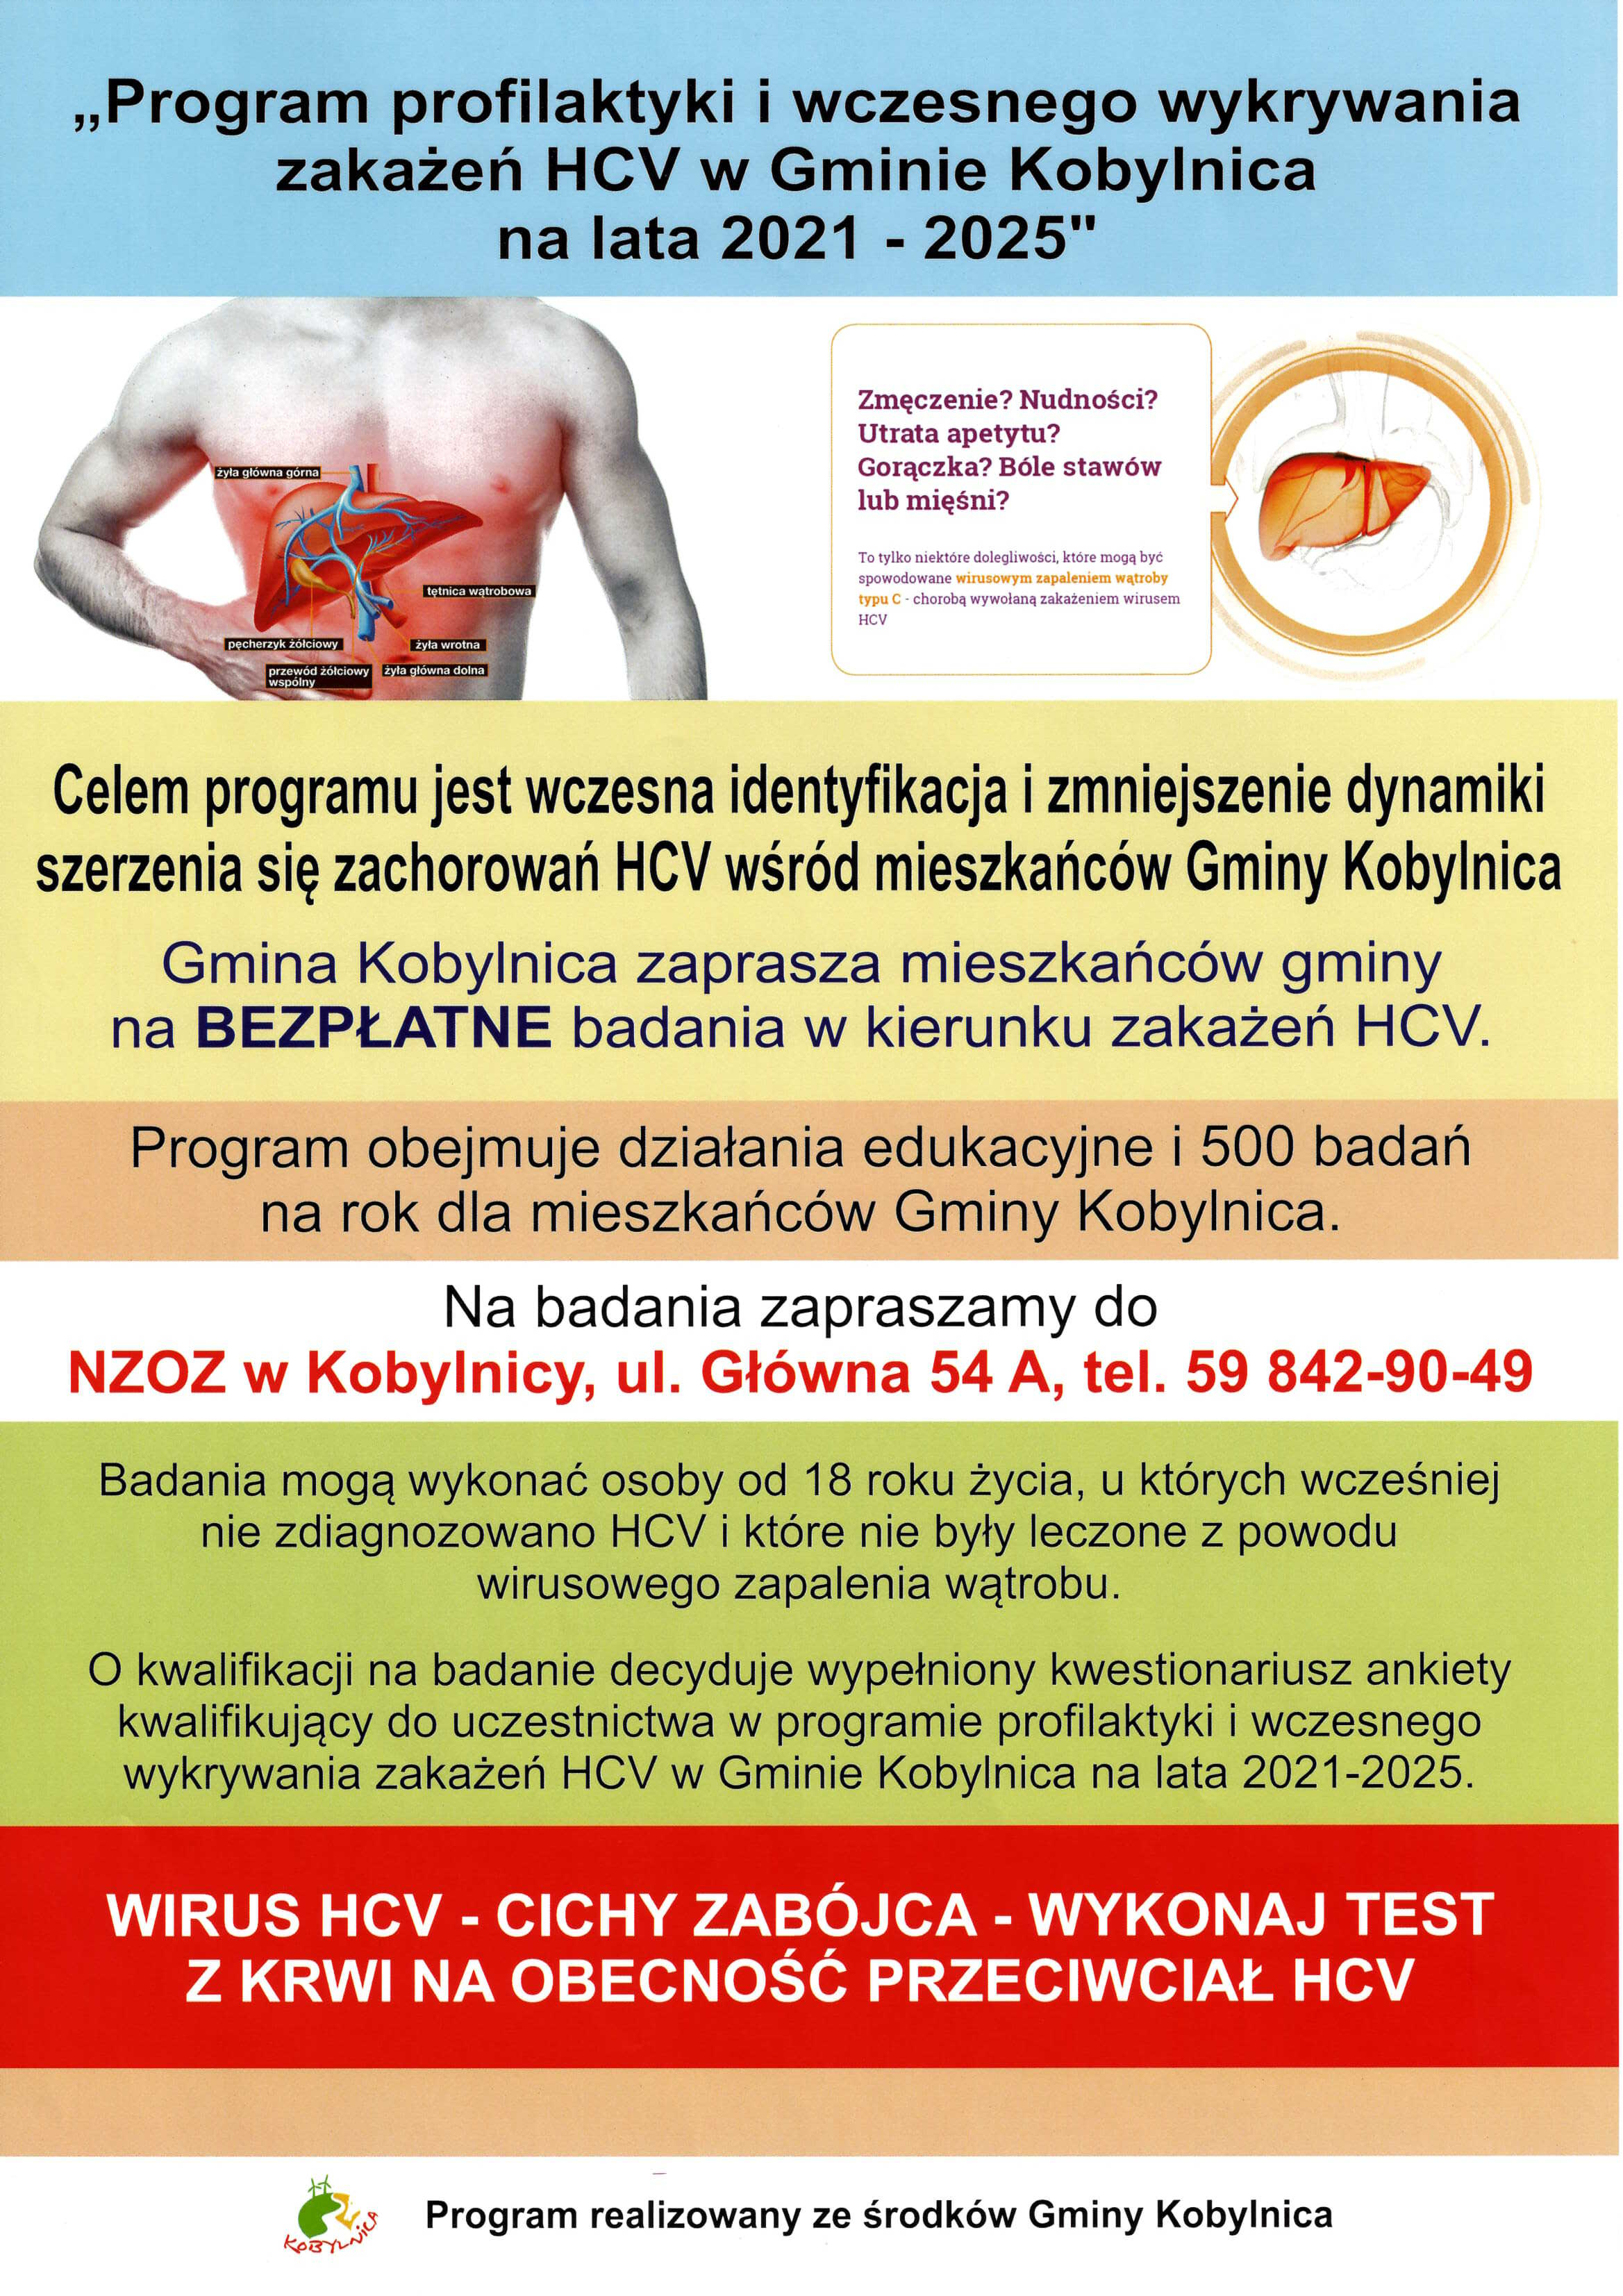 plakat przedstawiający program profilaktyki i wczesnego wykrywania HCV w Gminie Kobylnica na lata 2021 – 2025 